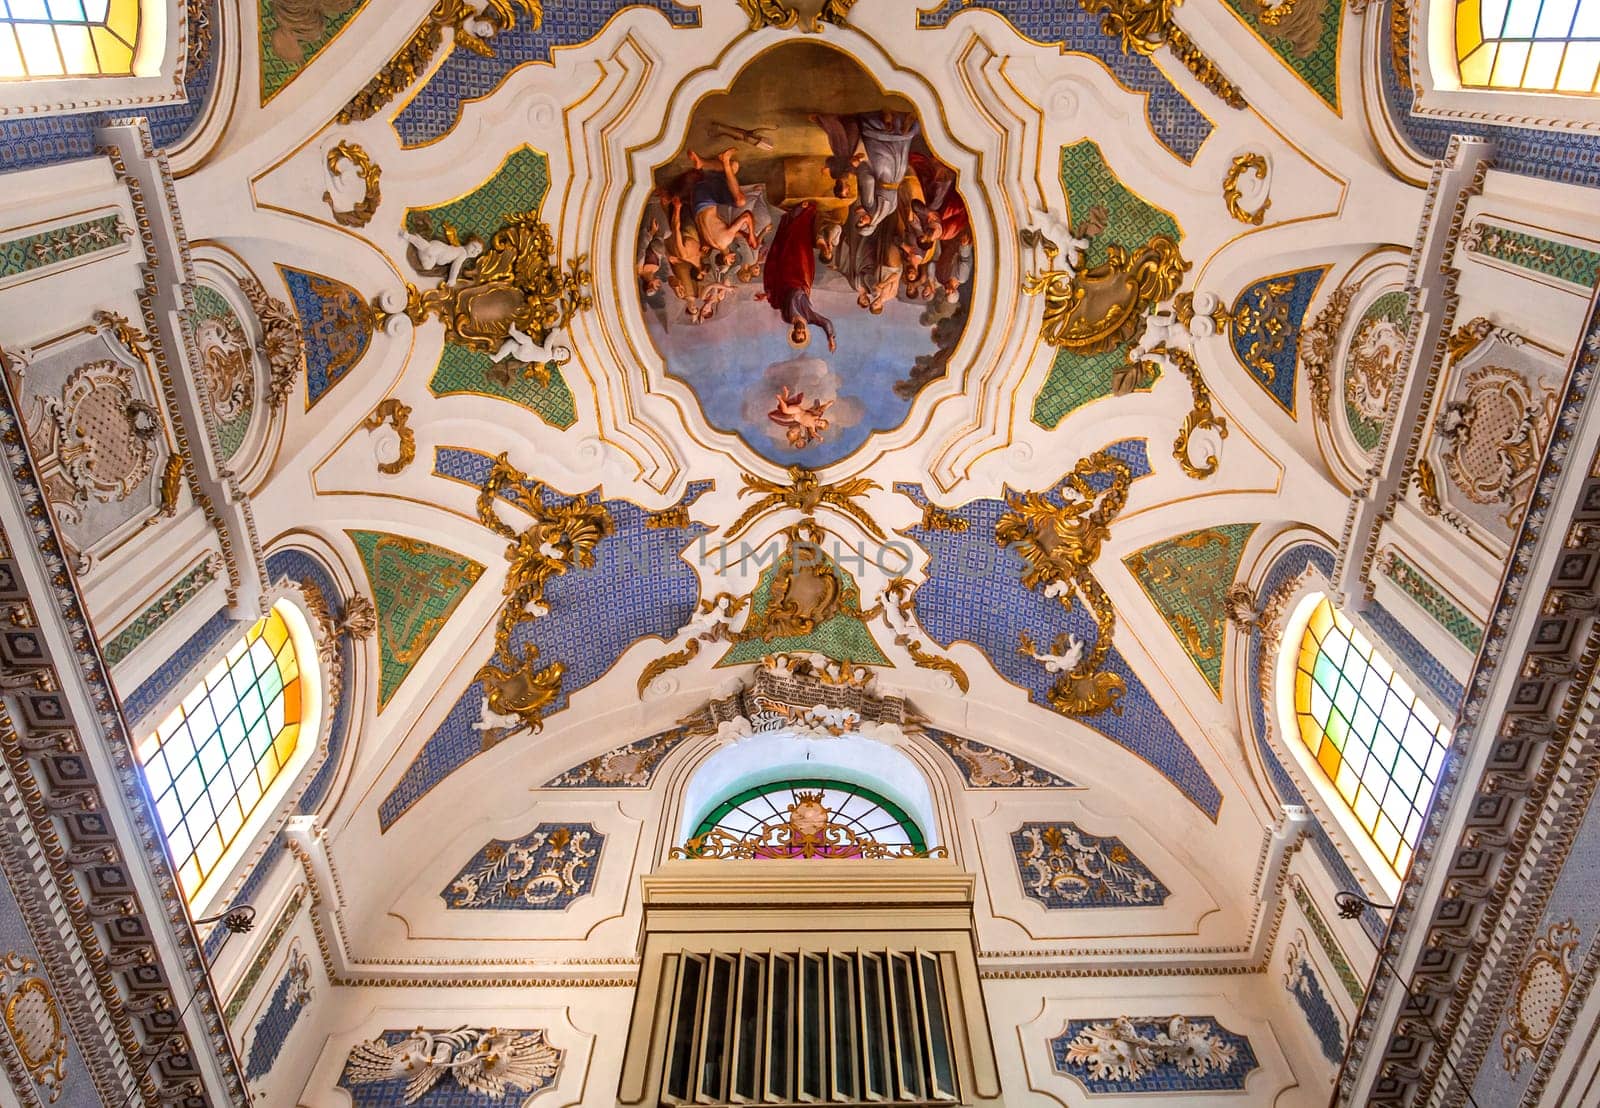 San Bartolomeo church, Scicli, sicily, Italy by photogolfer